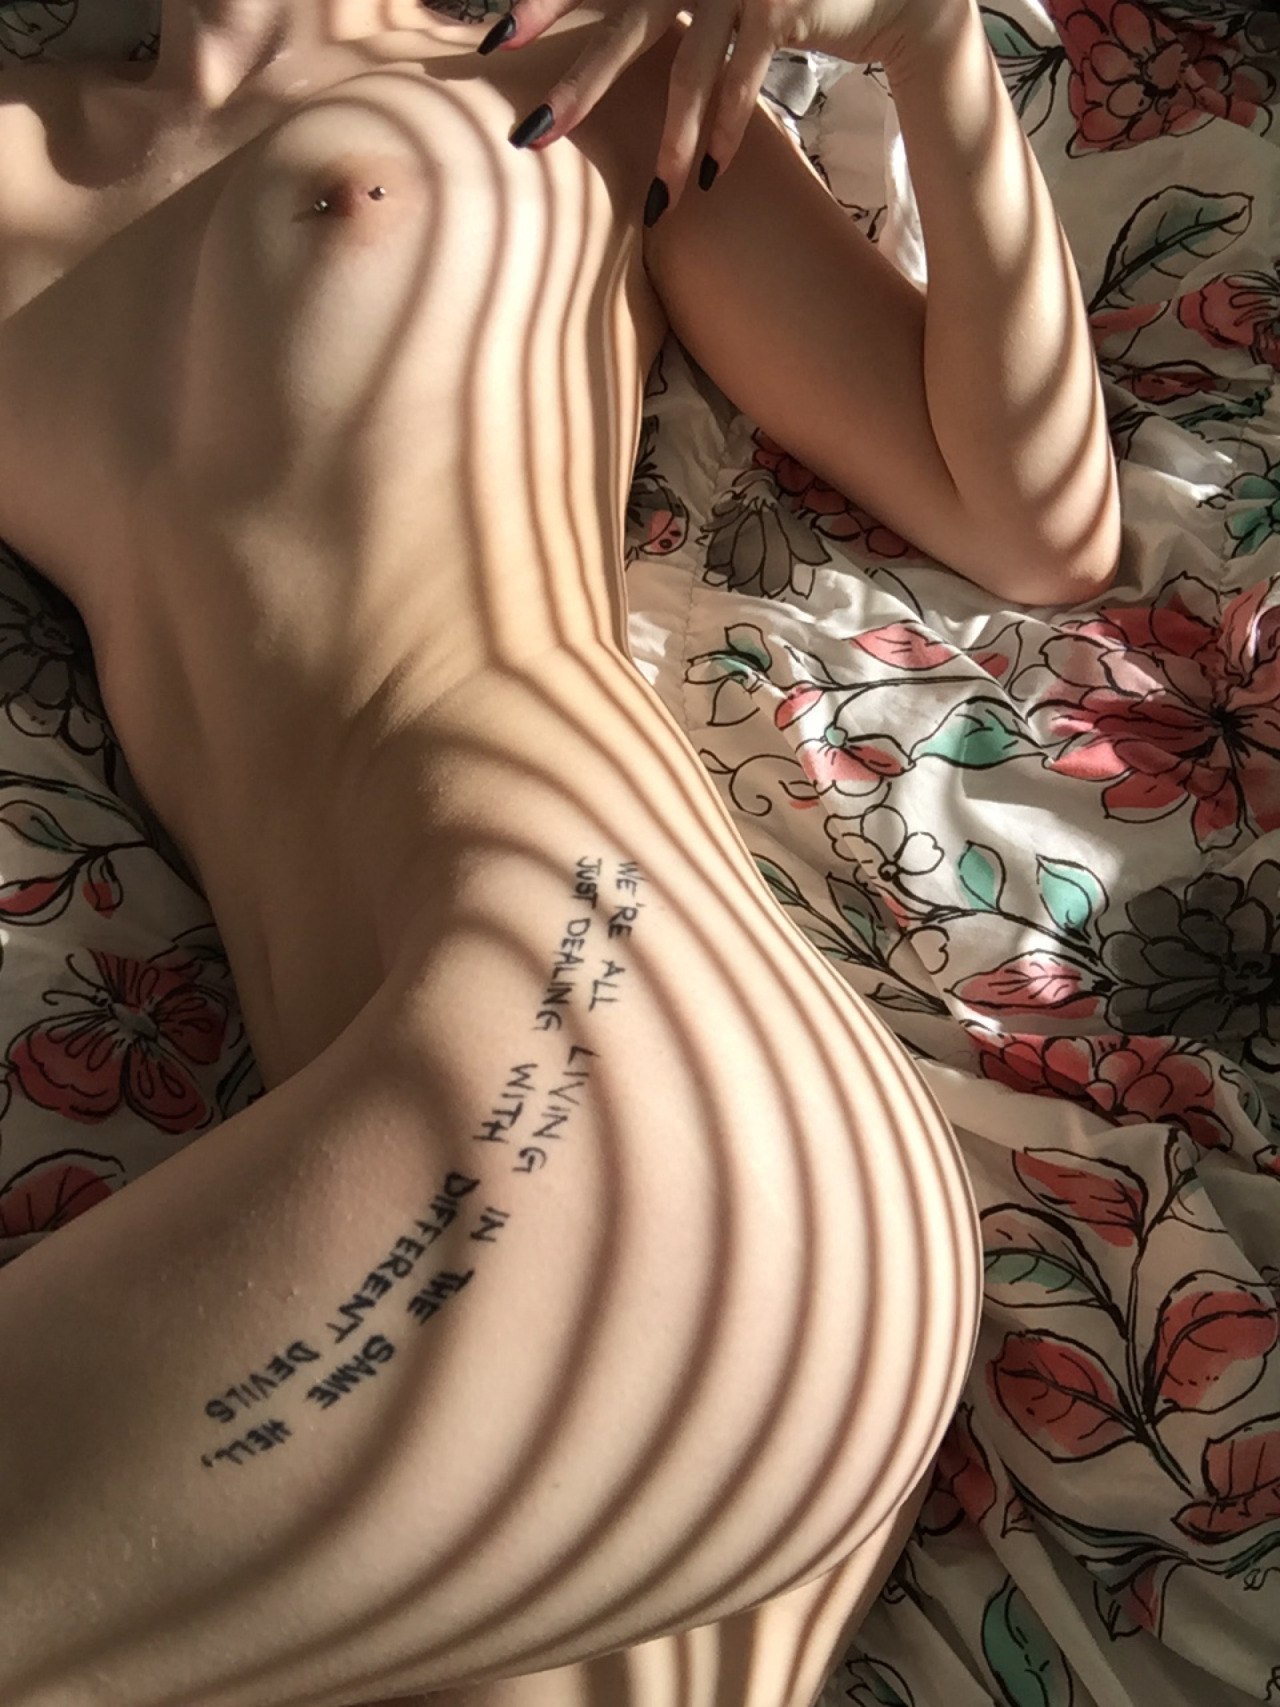 Подборка обнаженных телок с татуировками на теле 6 фото